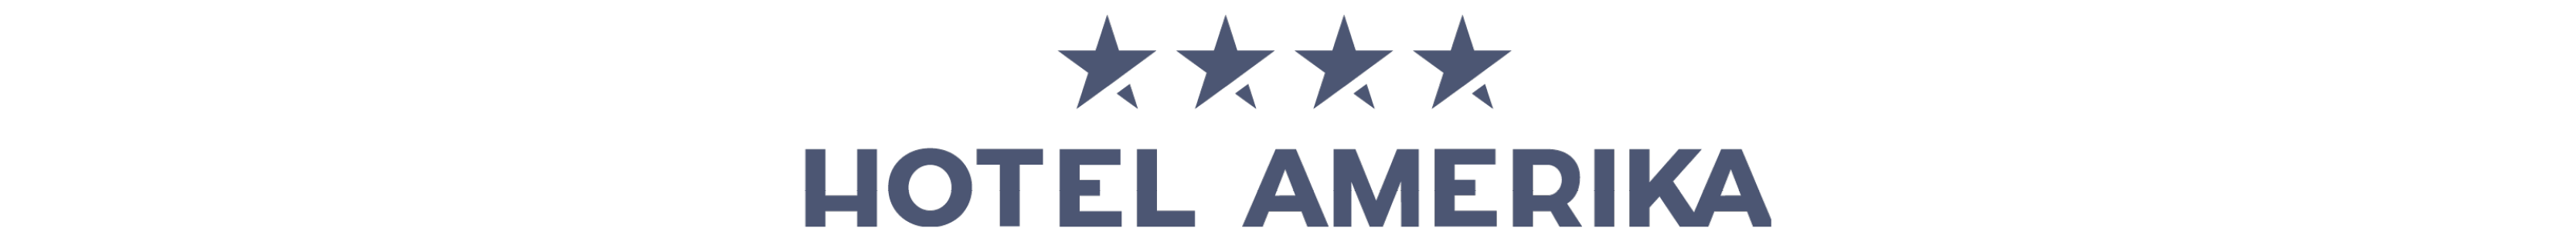 Hotel Amerika logo